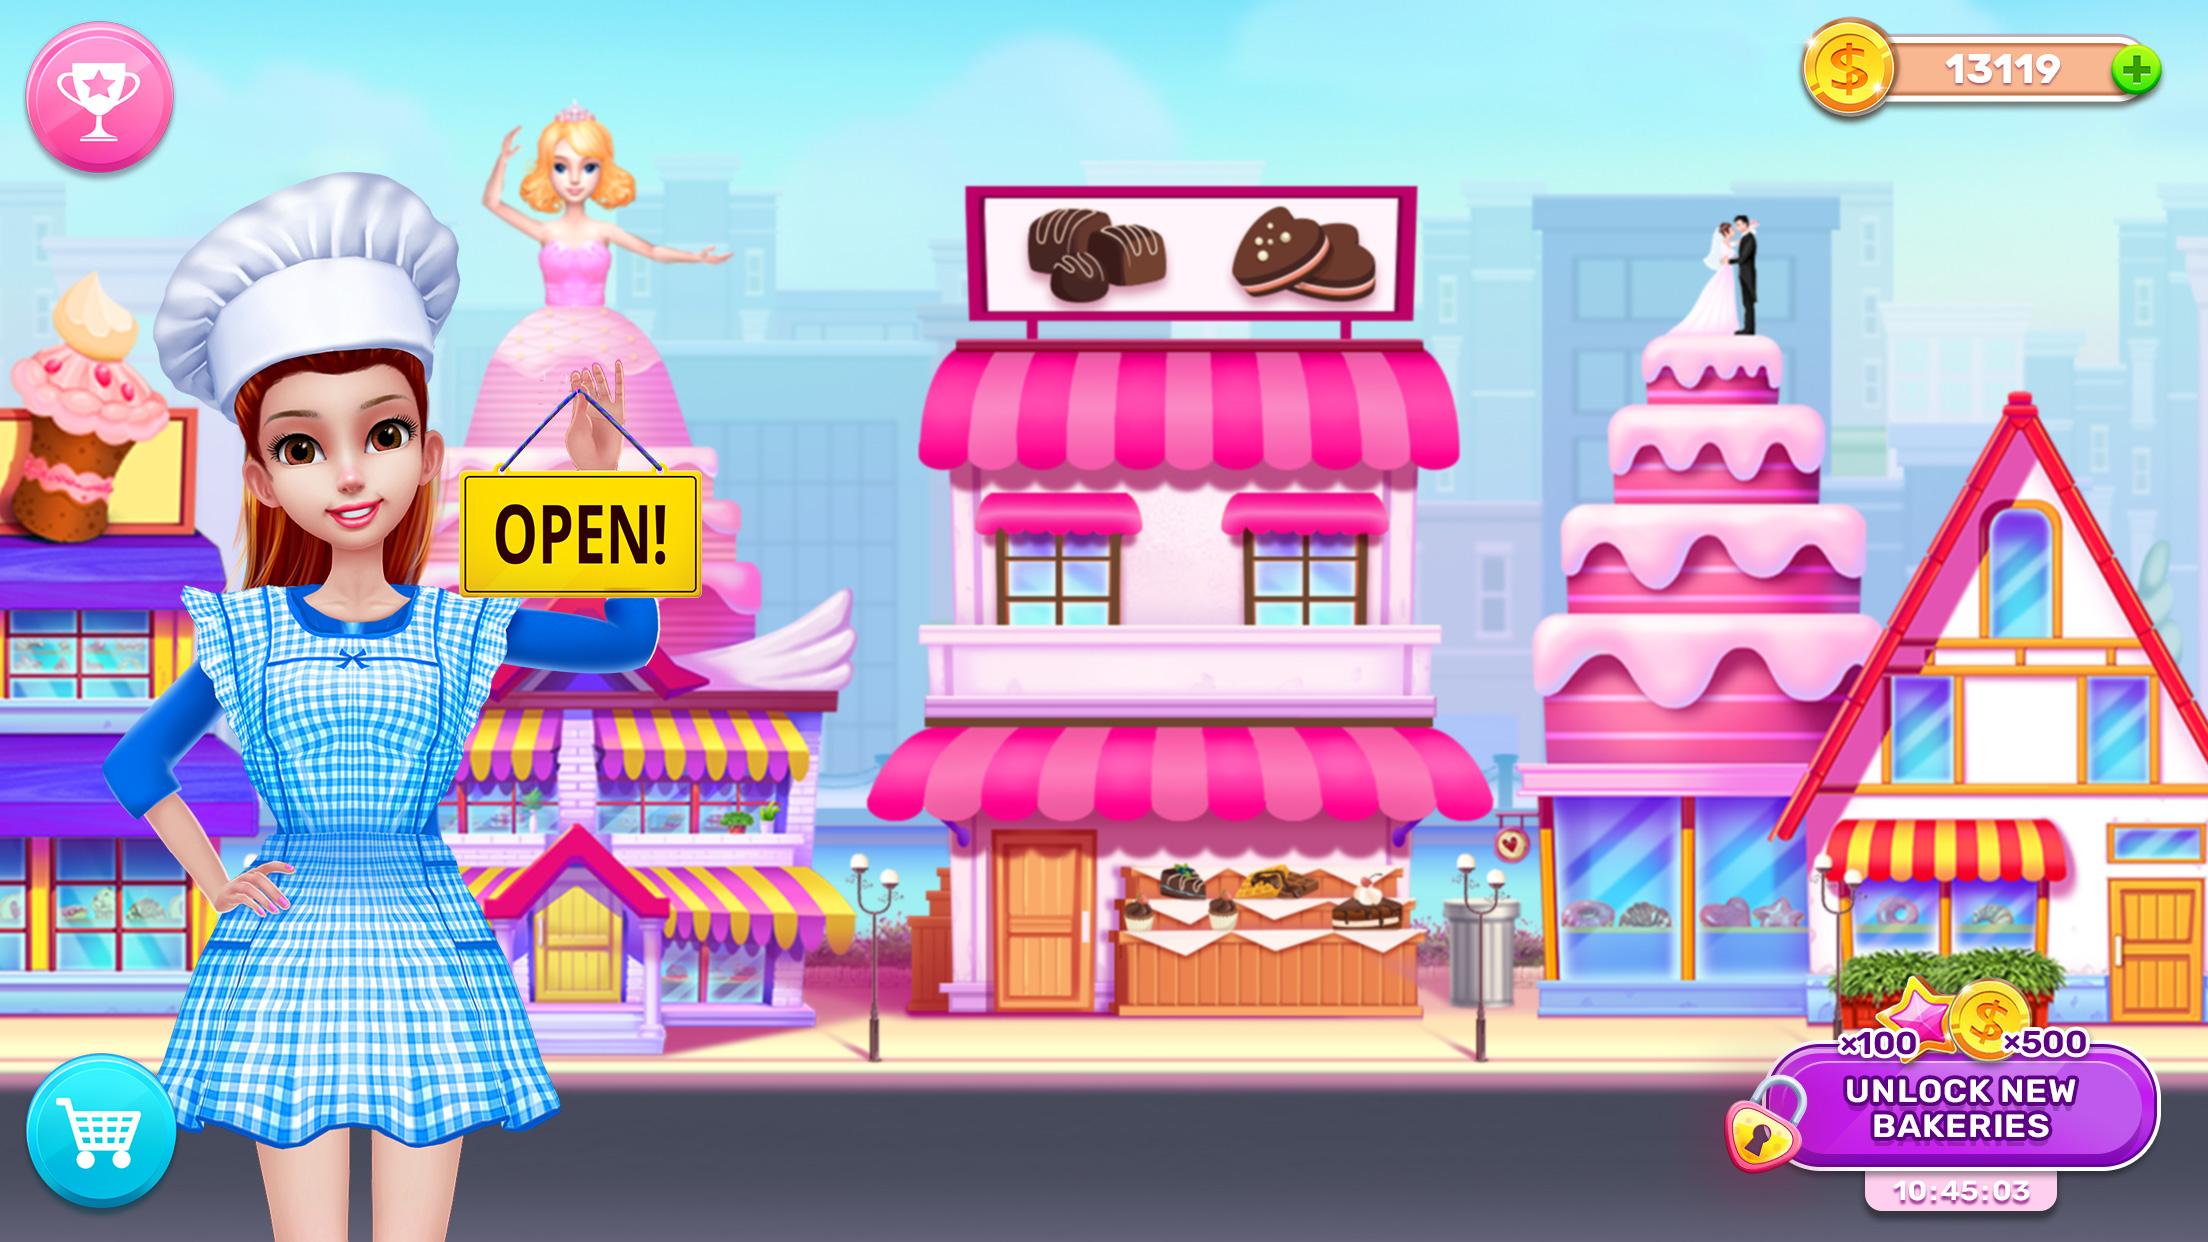 Tải xuống My Bakery Empire: Bake a Cake trên PC | GameLoop chính thức